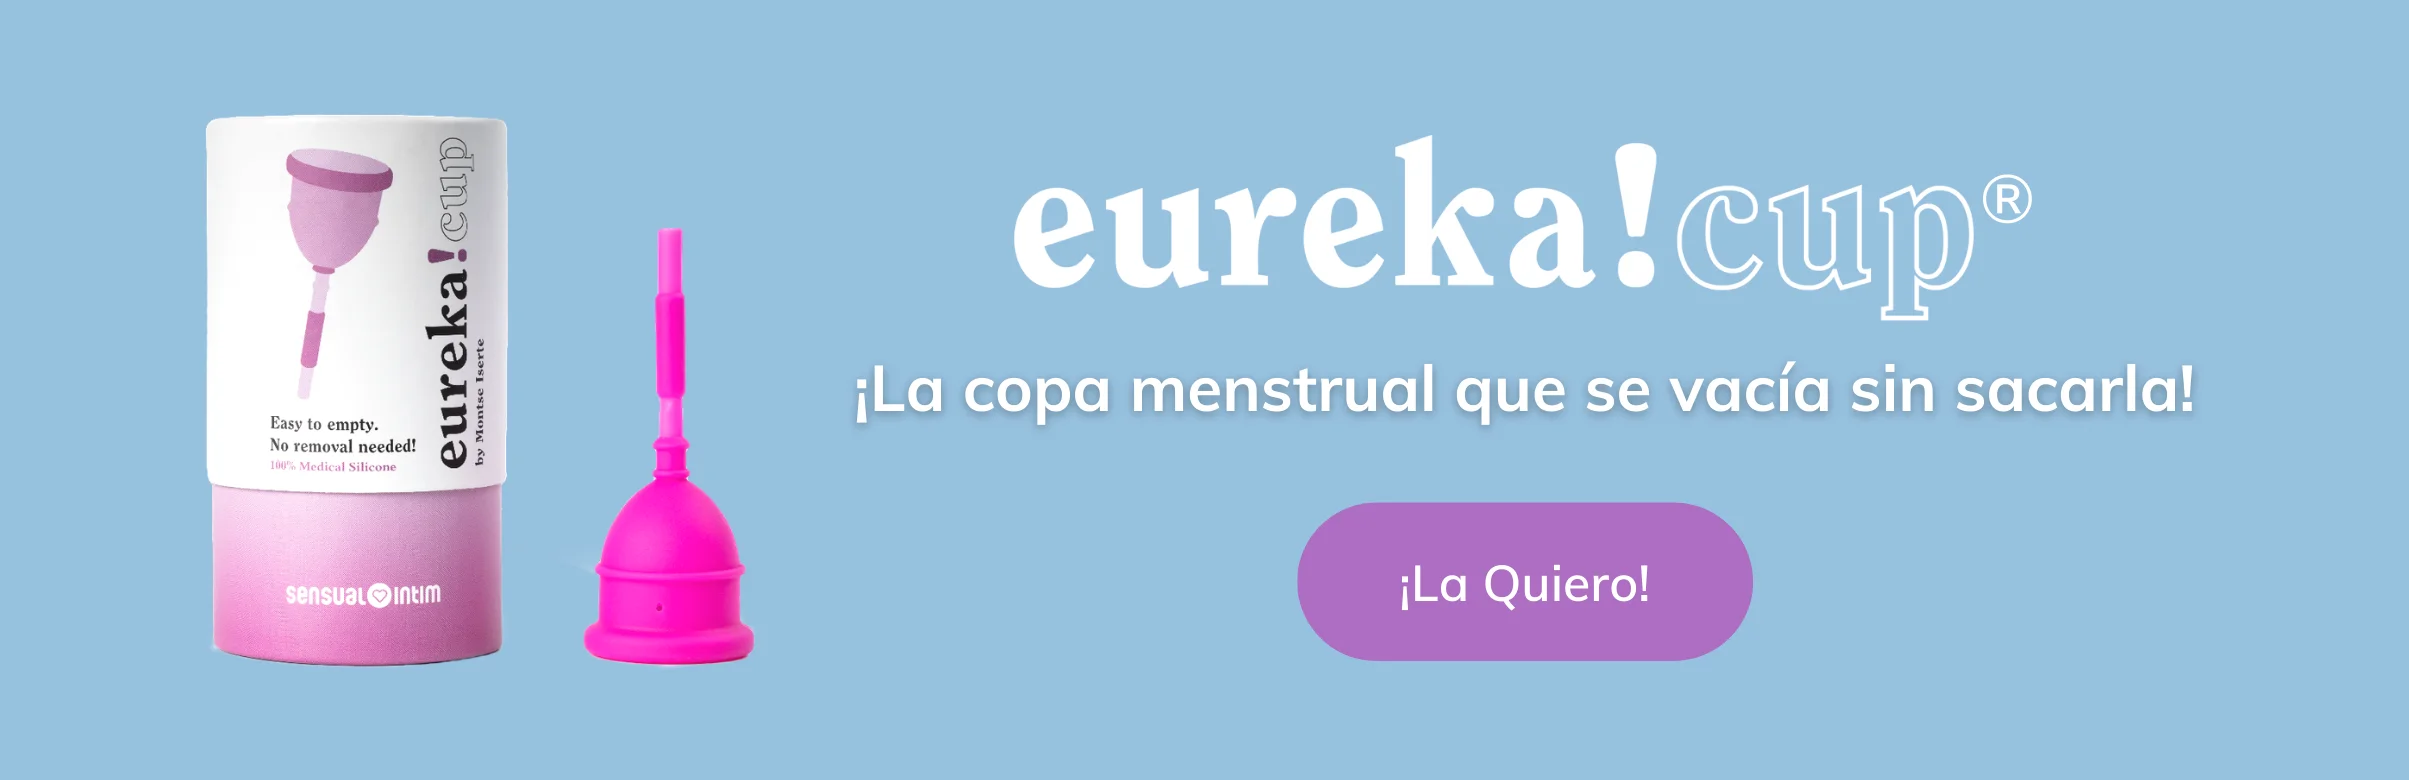 copa menstrual eureka! cup | sensual intim